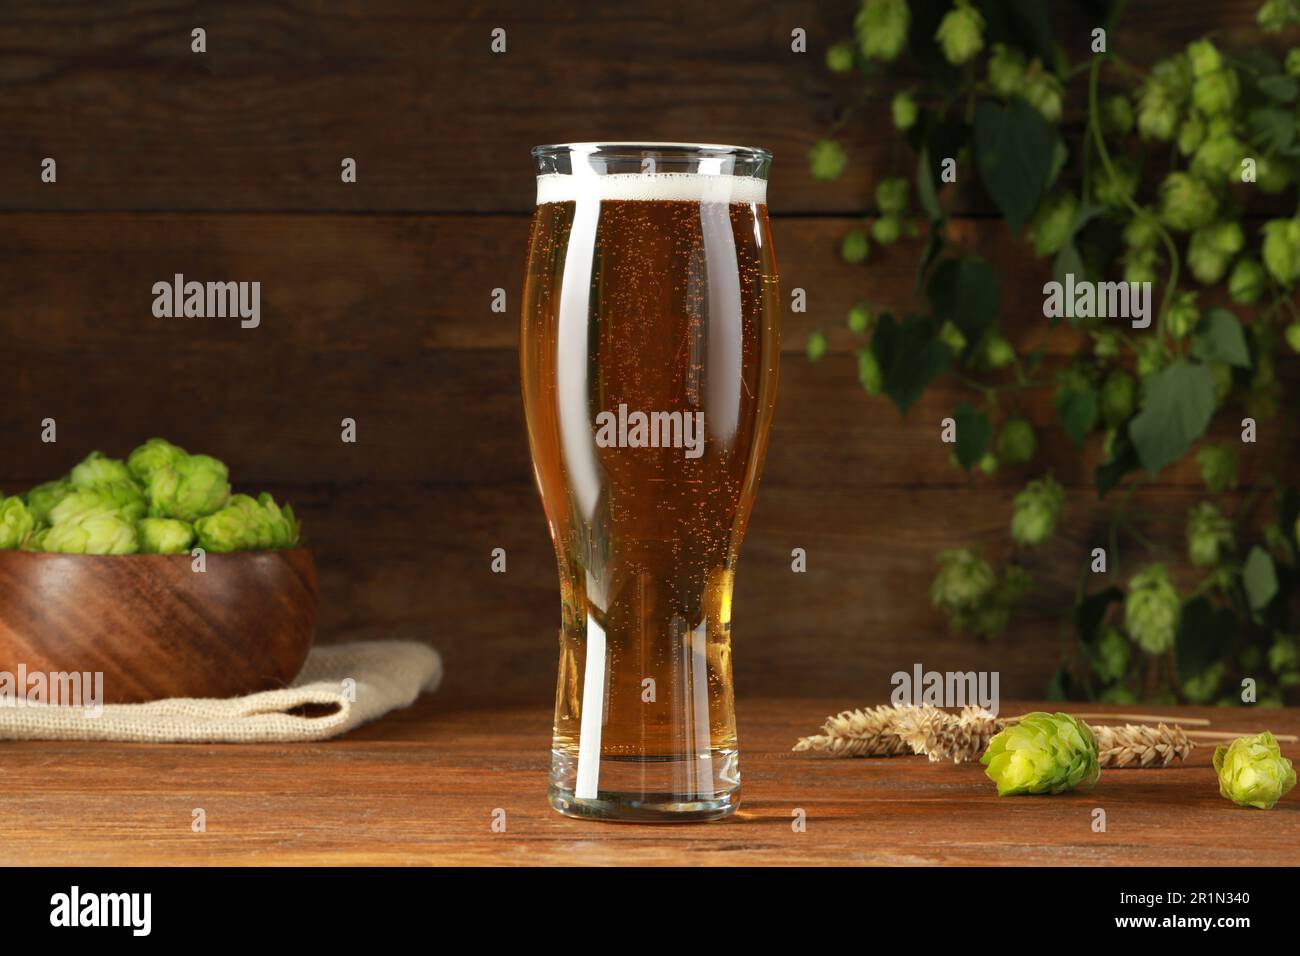 Ein Glas Bier, frischer grüner Hopfen und Stacheln auf einem Holztisch  Stockfotografie - Alamy